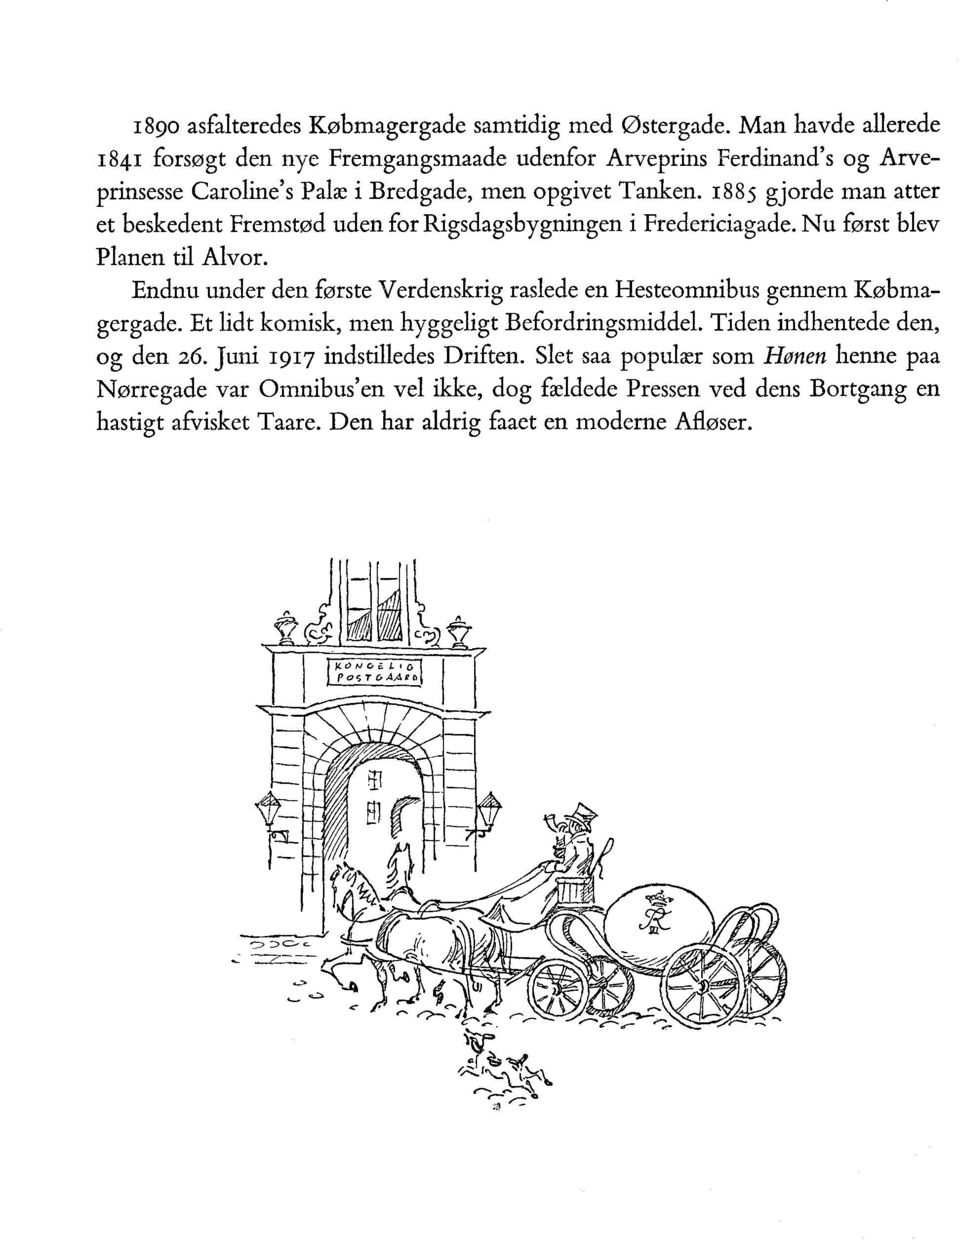 1885 gjorde man atter et beskedent Fremstød uden for Rigsdagsbygningen i Fredericiagade. Nu først blev Planen til Alvor.